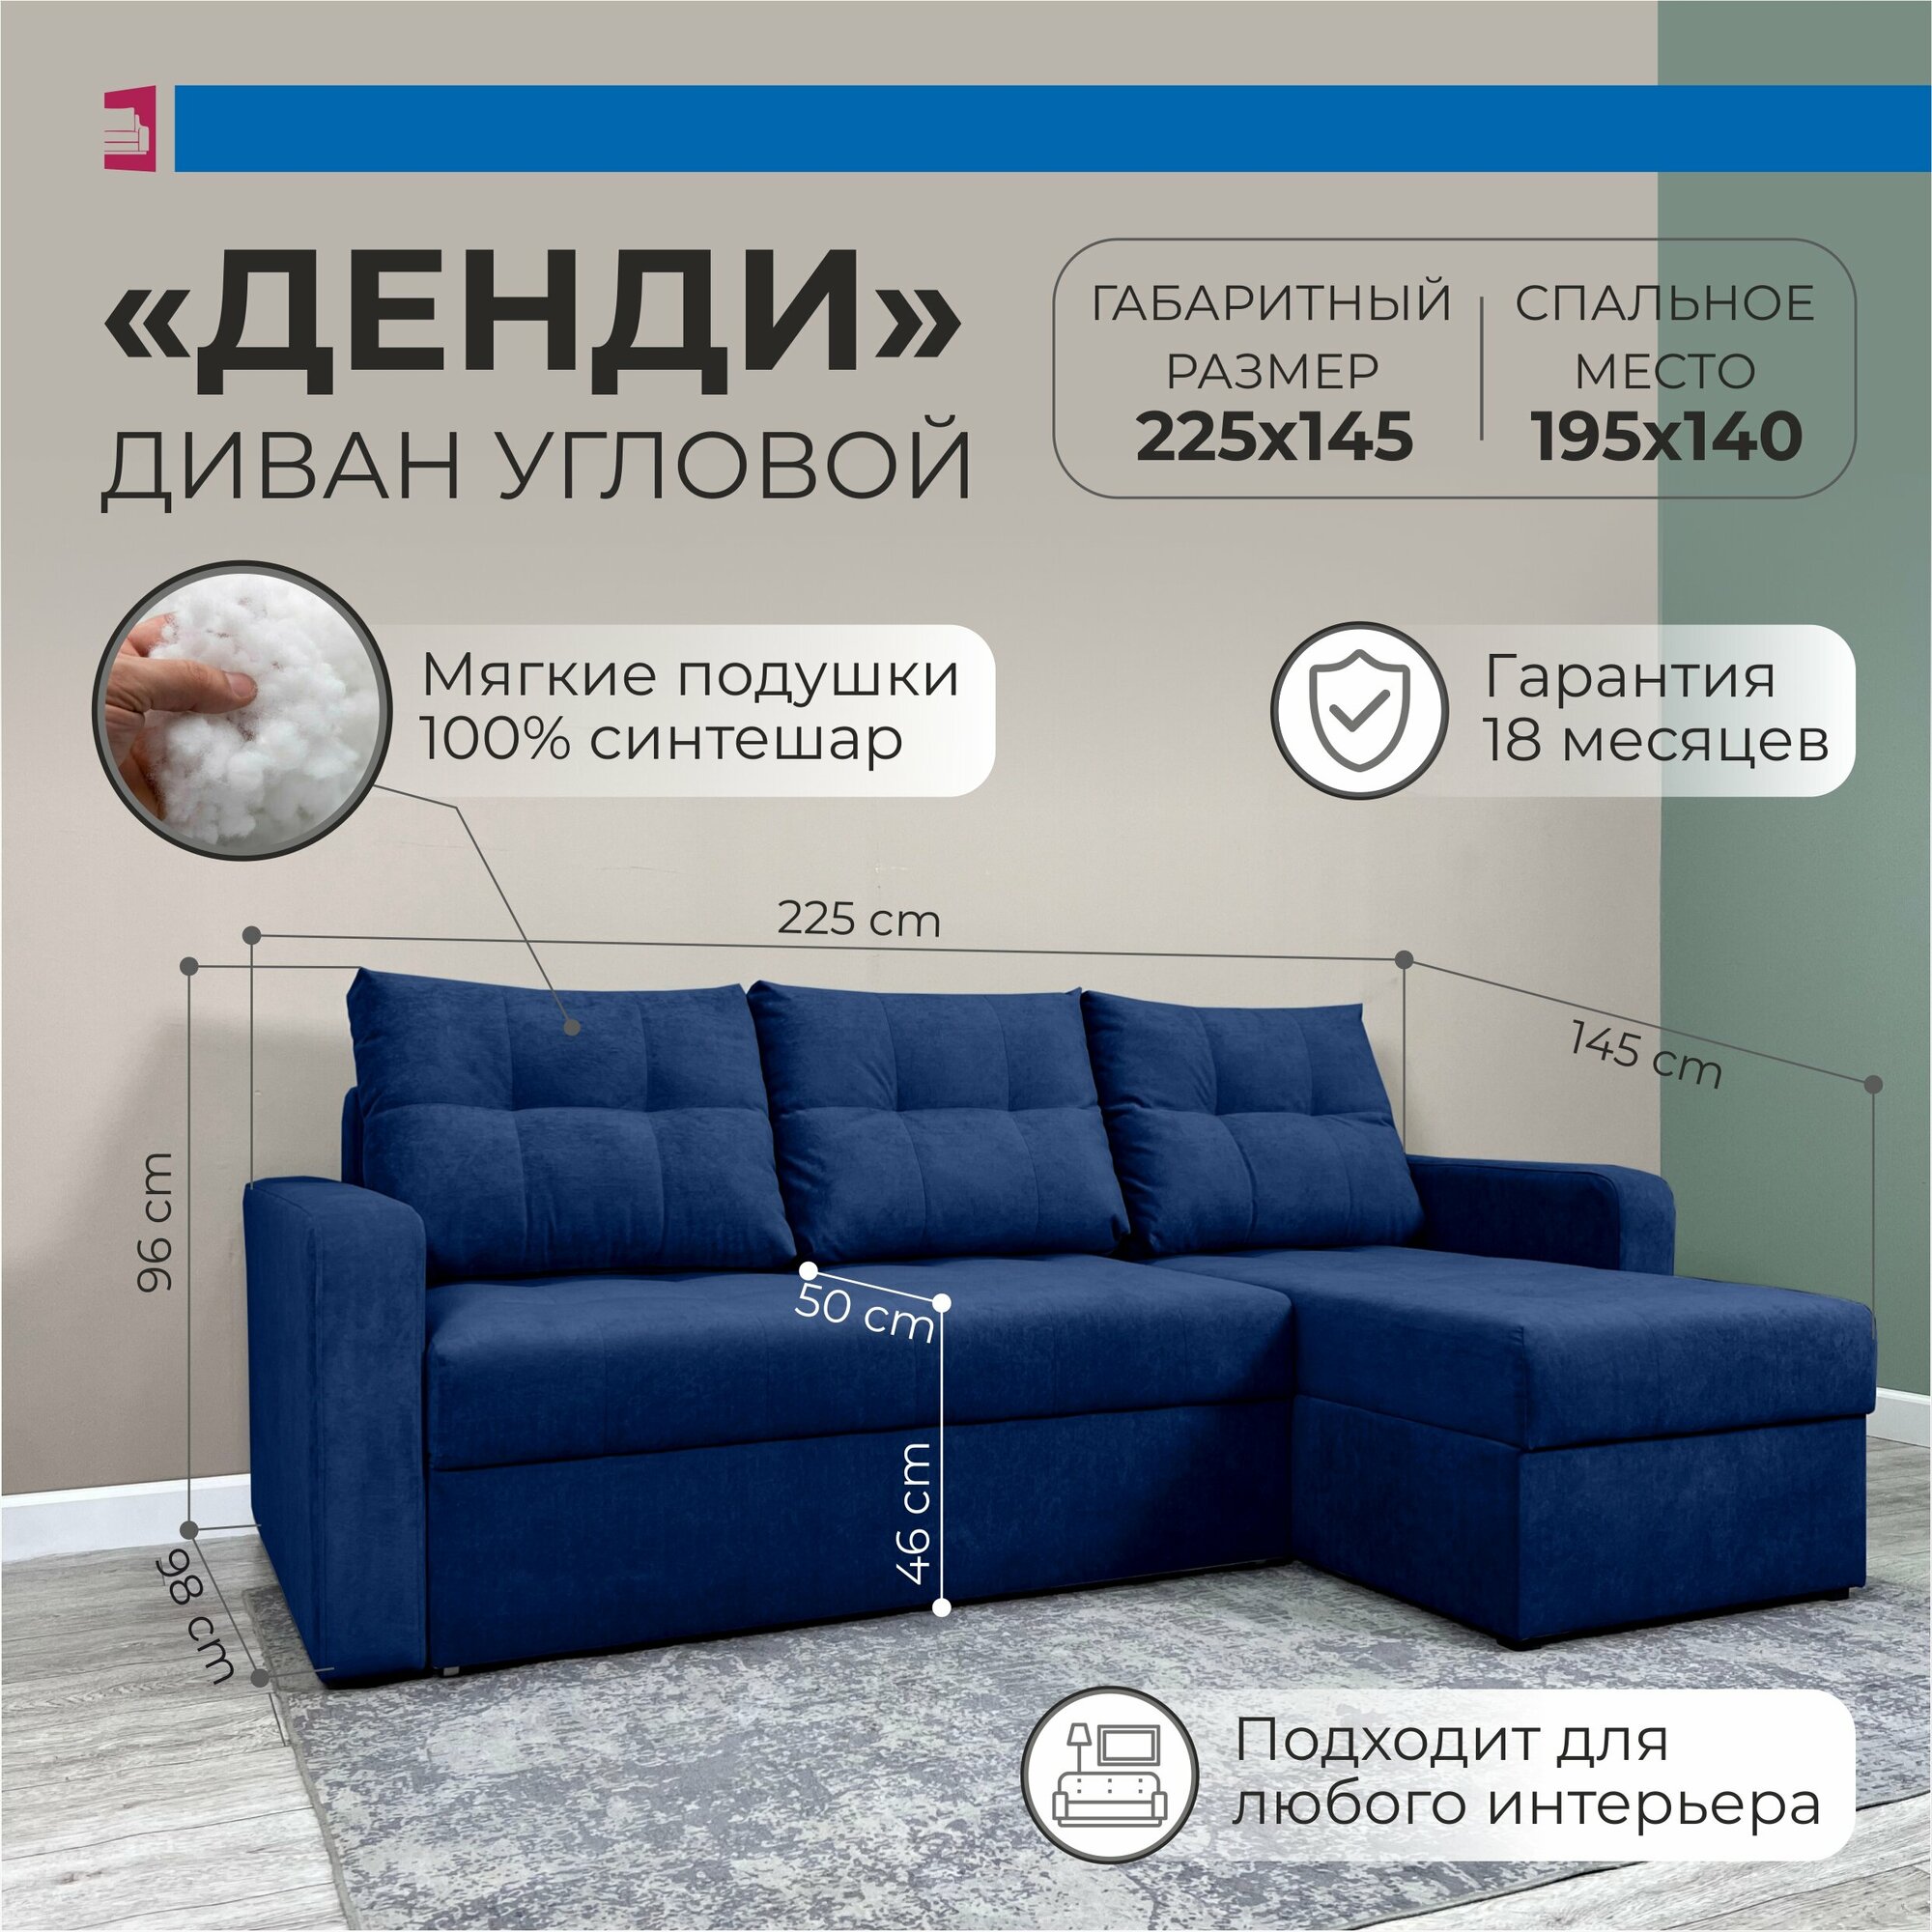 “Синий” раскладной универсально-угловой диван кровать “Денди”, двуспальный диван трансформер Еврокнижка, современный стиль, mebelrus